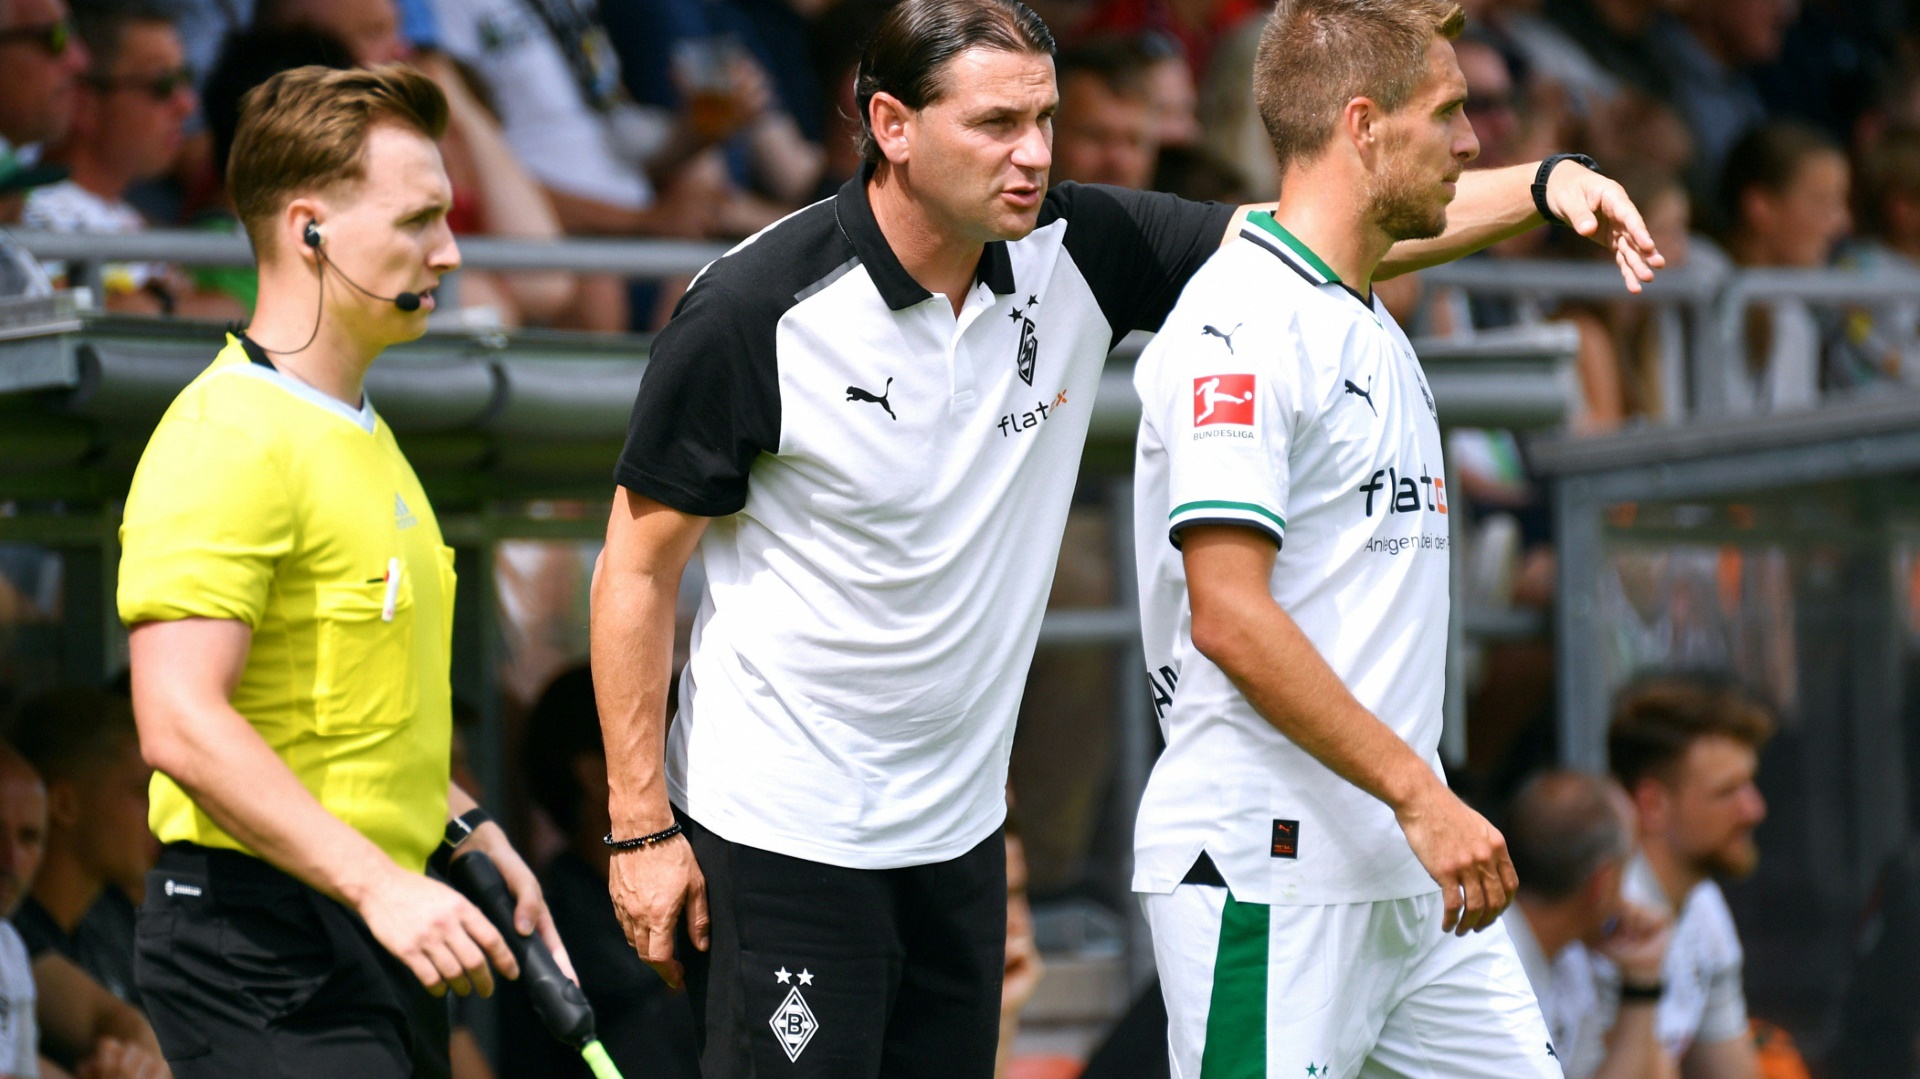 Seoane würdigt Herrmann: "Ein Gesicht der Borussia"